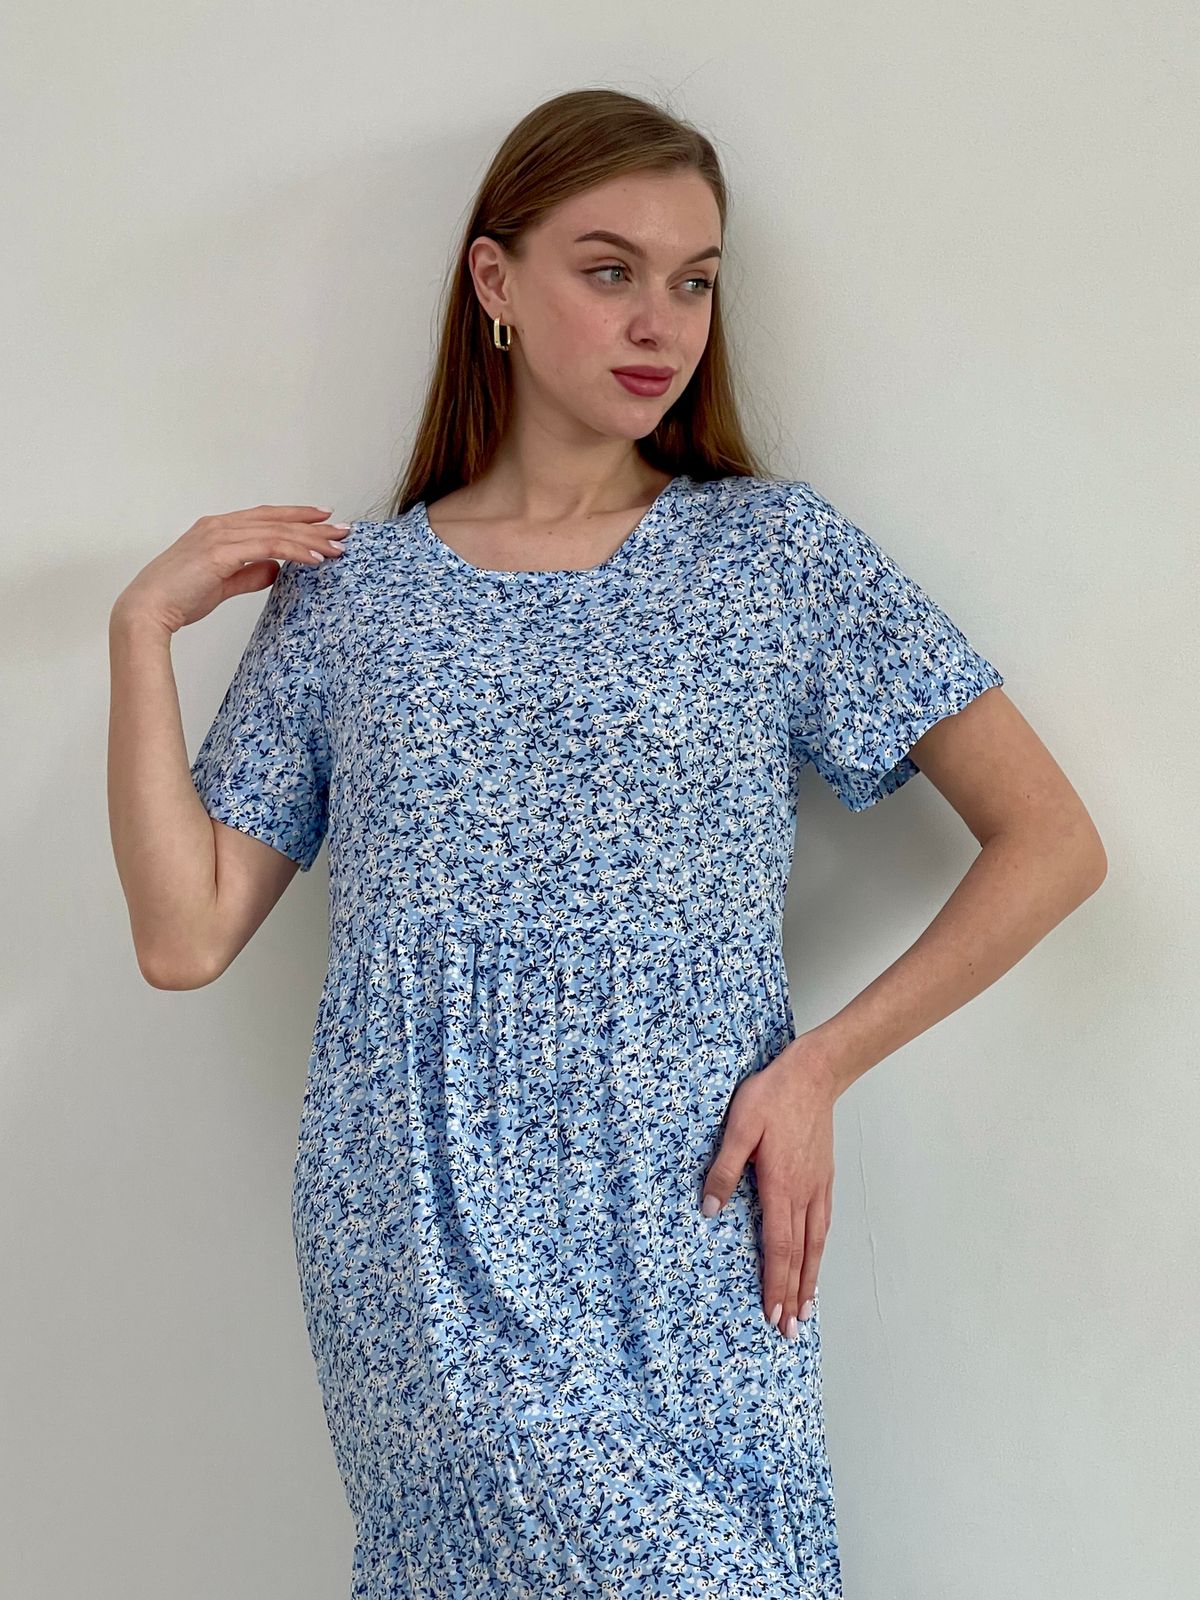 Купить Летнее платье с рюшами в цветочек голубое Merlini Казерта 700001265 размер 42-44 (S-M) в интернет-магазине